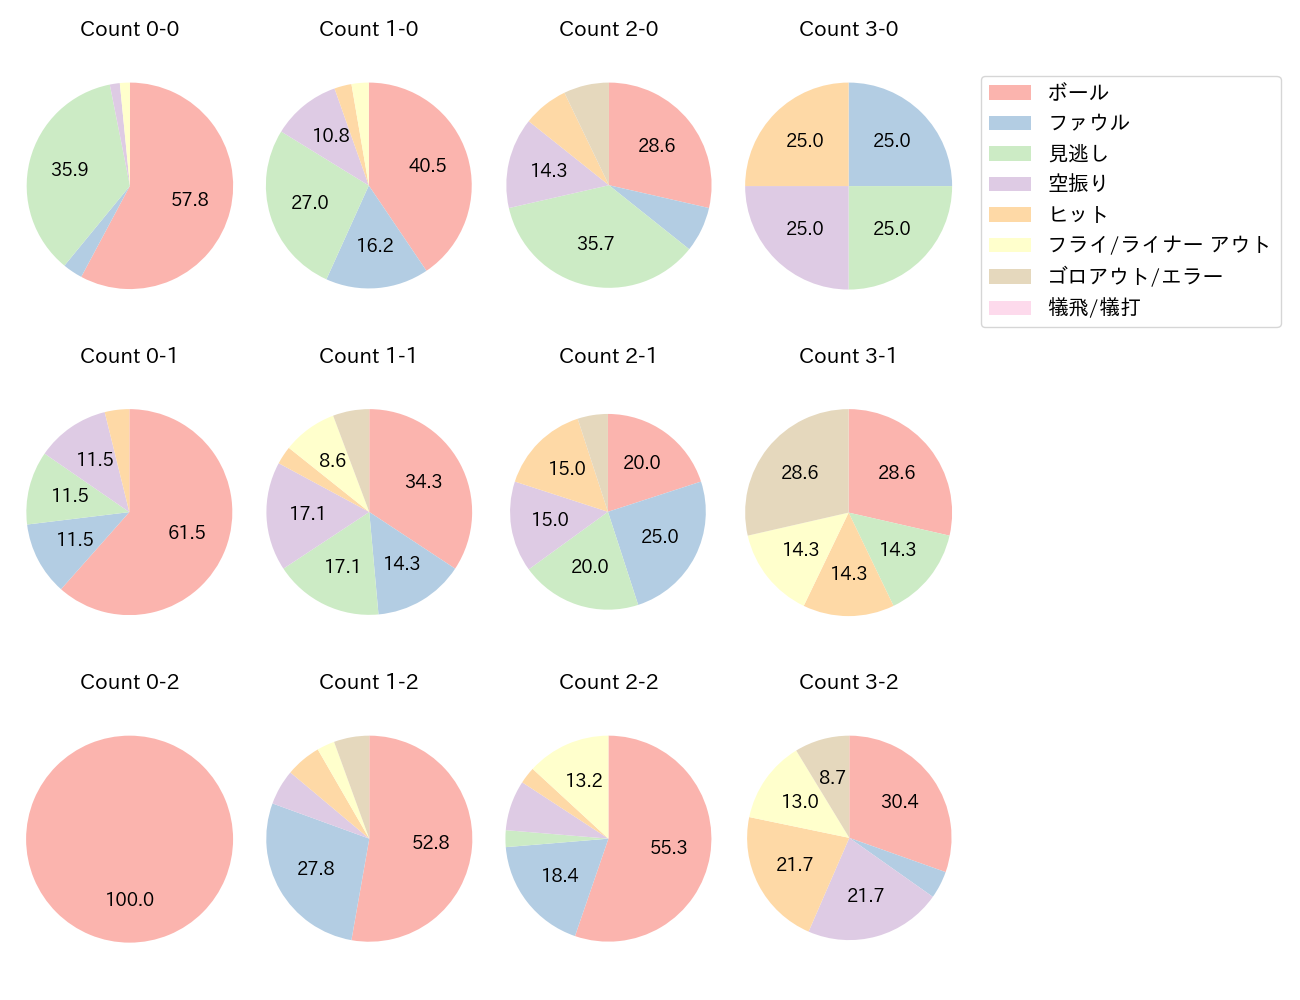 鈴木 誠也の球数分布(2021年10月)